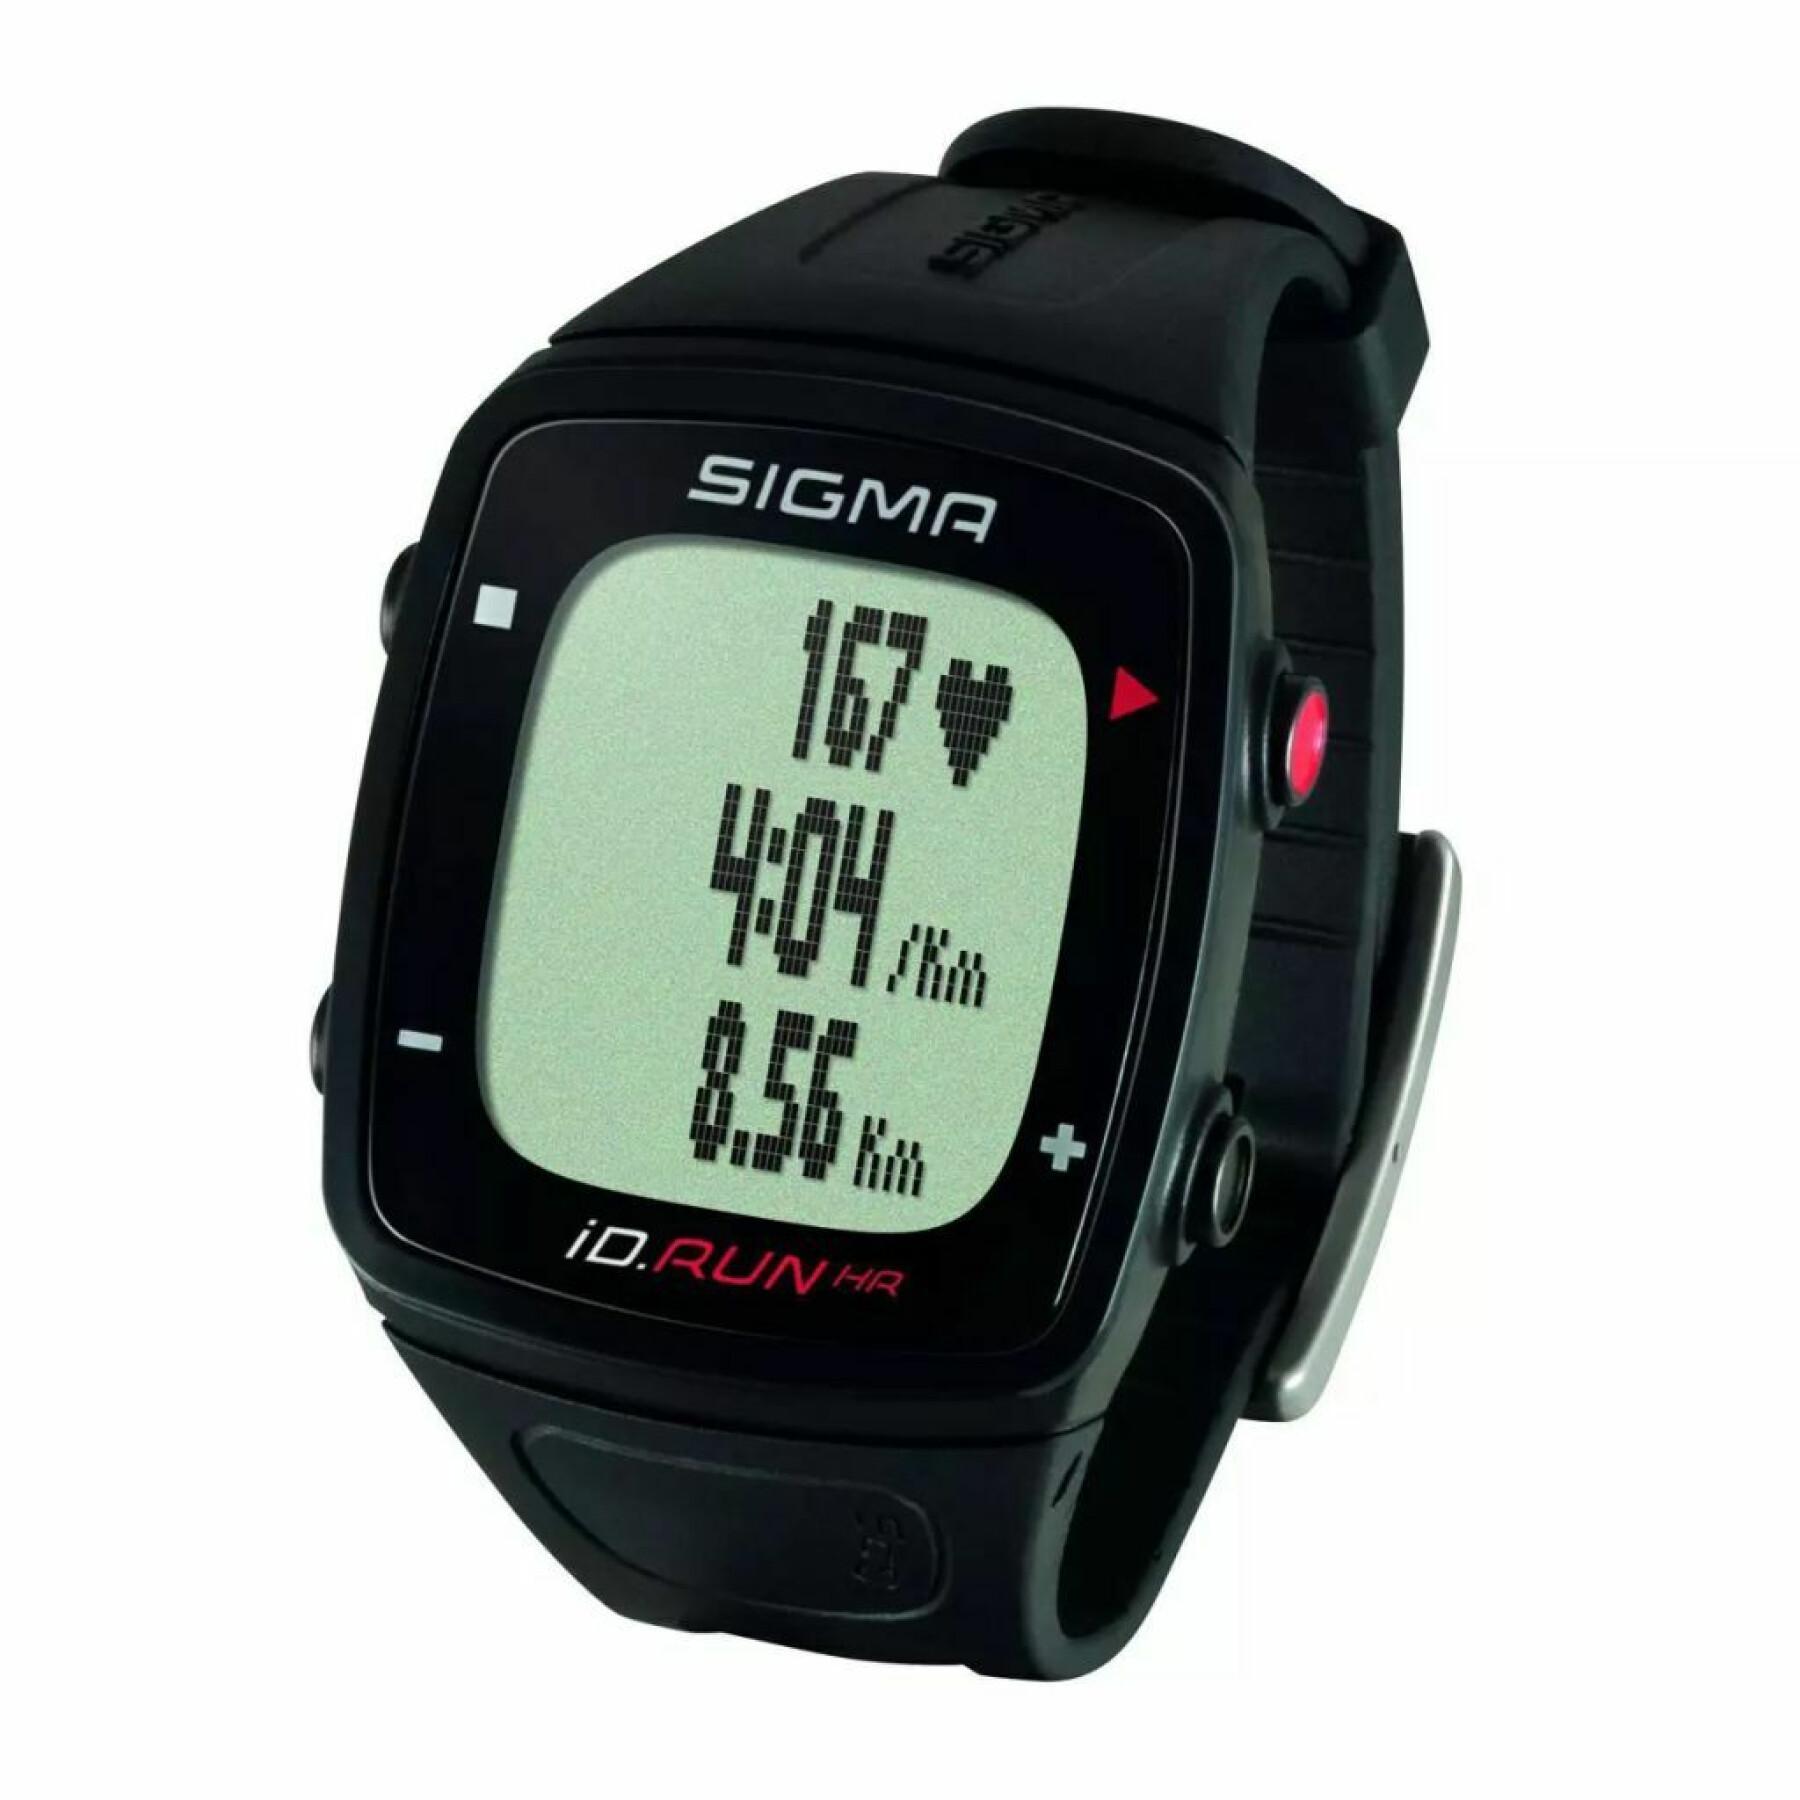 Reloj cardiovascular con 10 funciones, incluyendo distancia y velocidad gps Sigma iD.Run HR